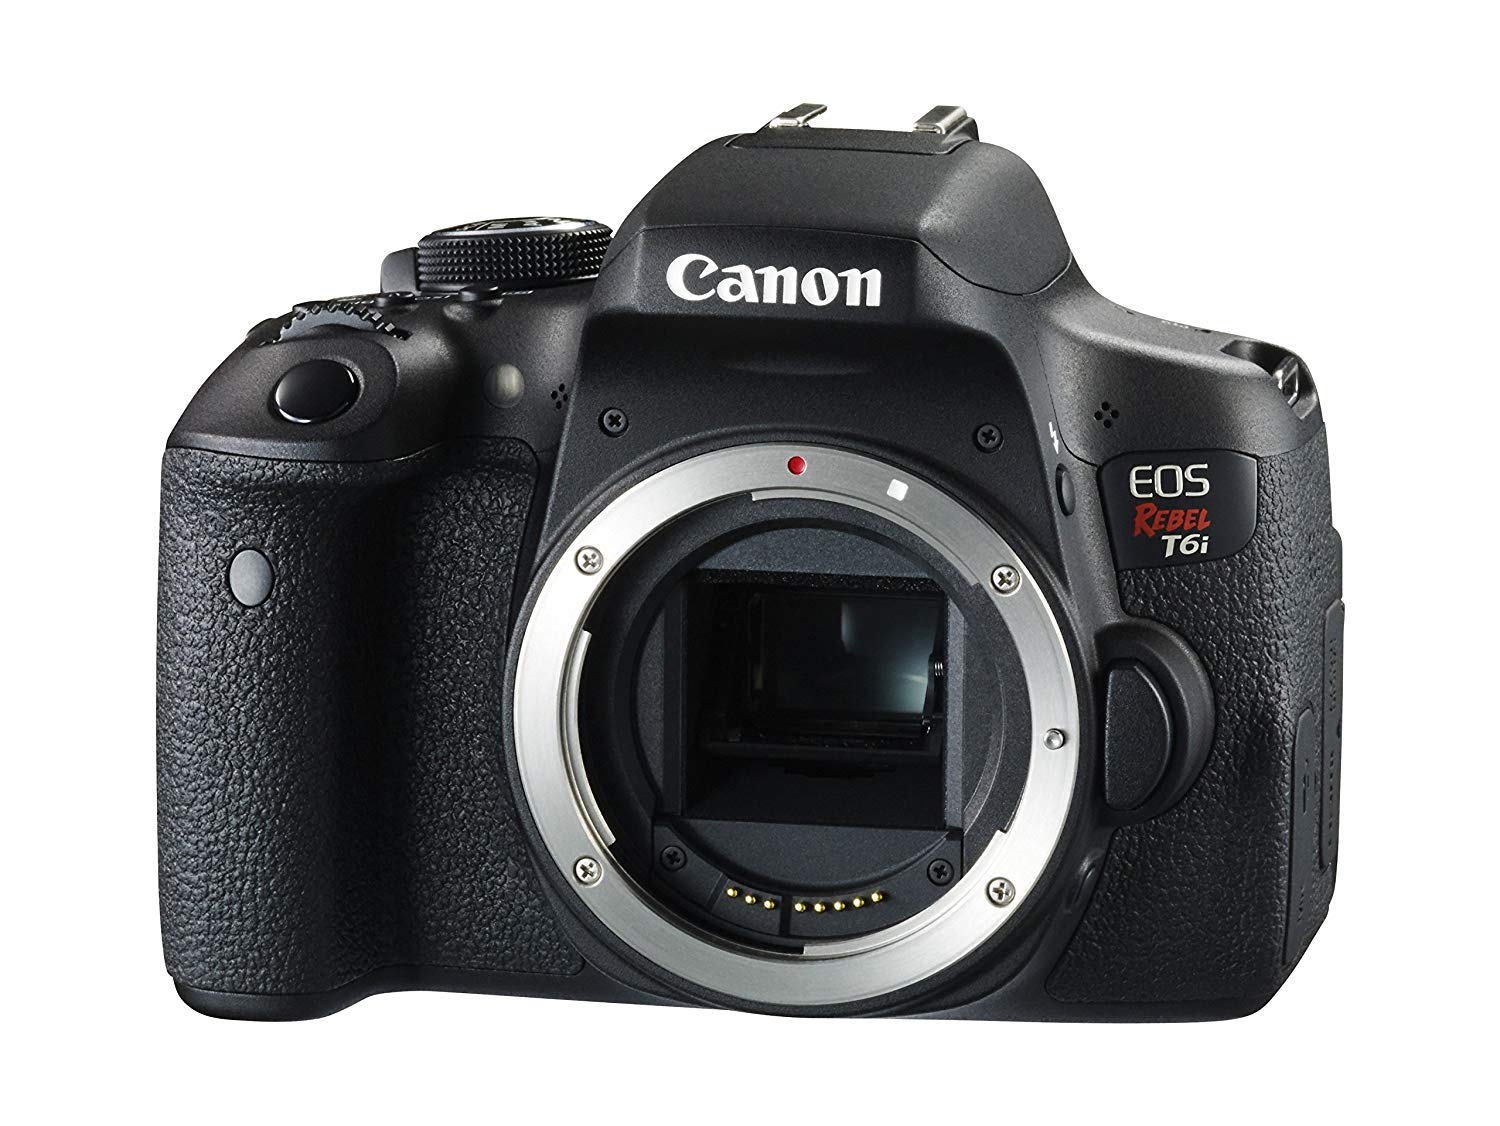 Canon EOS Rebel T6i Digital SLR (الهيكل فقط) - تم تمكين Wi-Fi